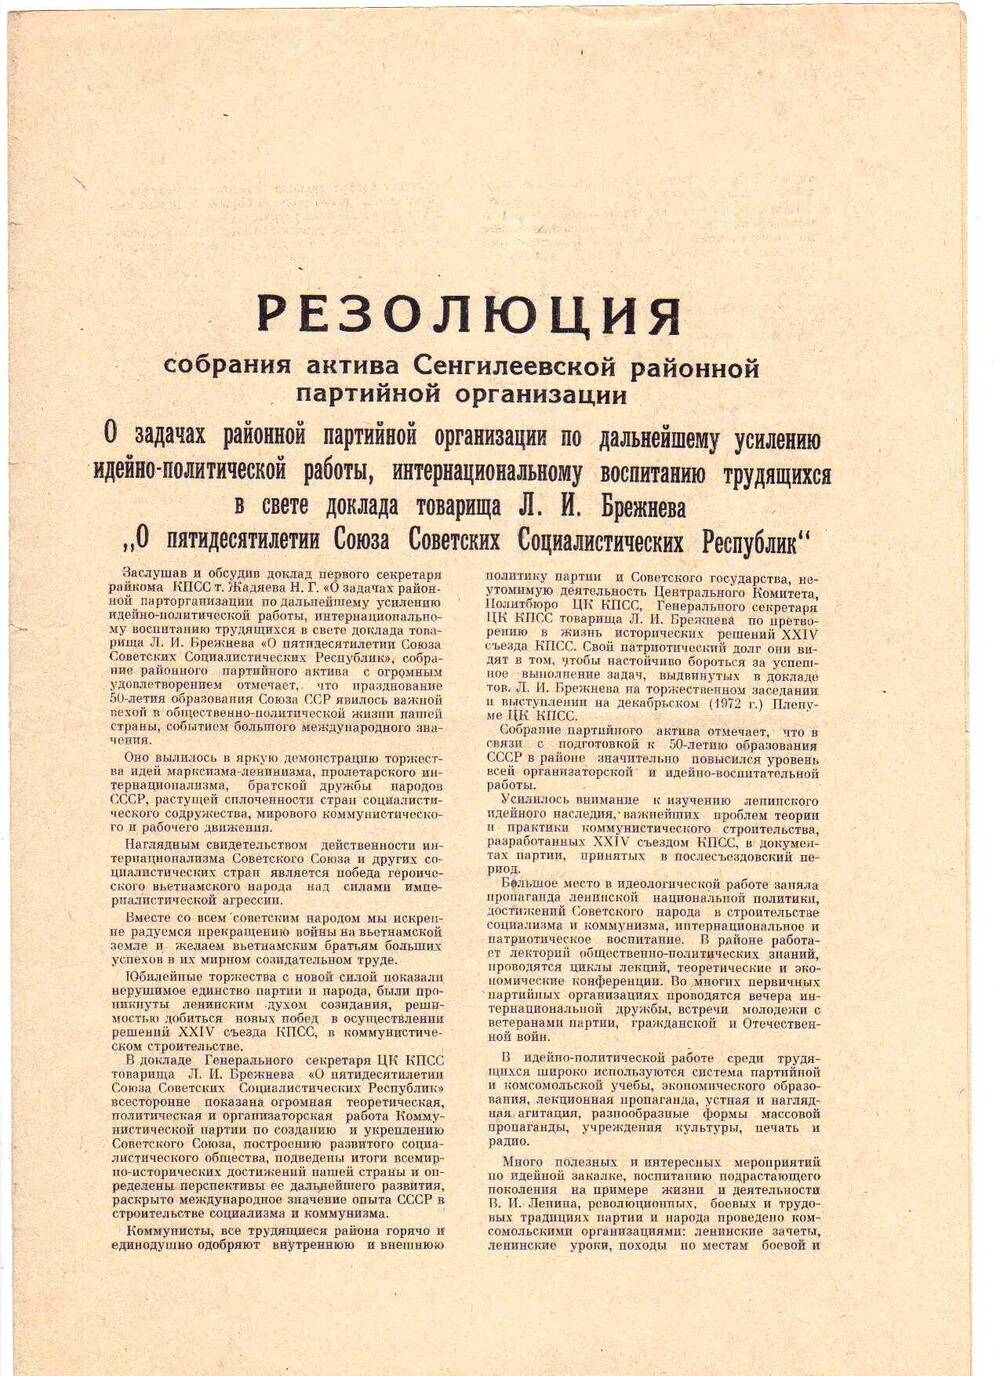 Резолюция собрания актива Сенгилеевской районной партийной орг-ции